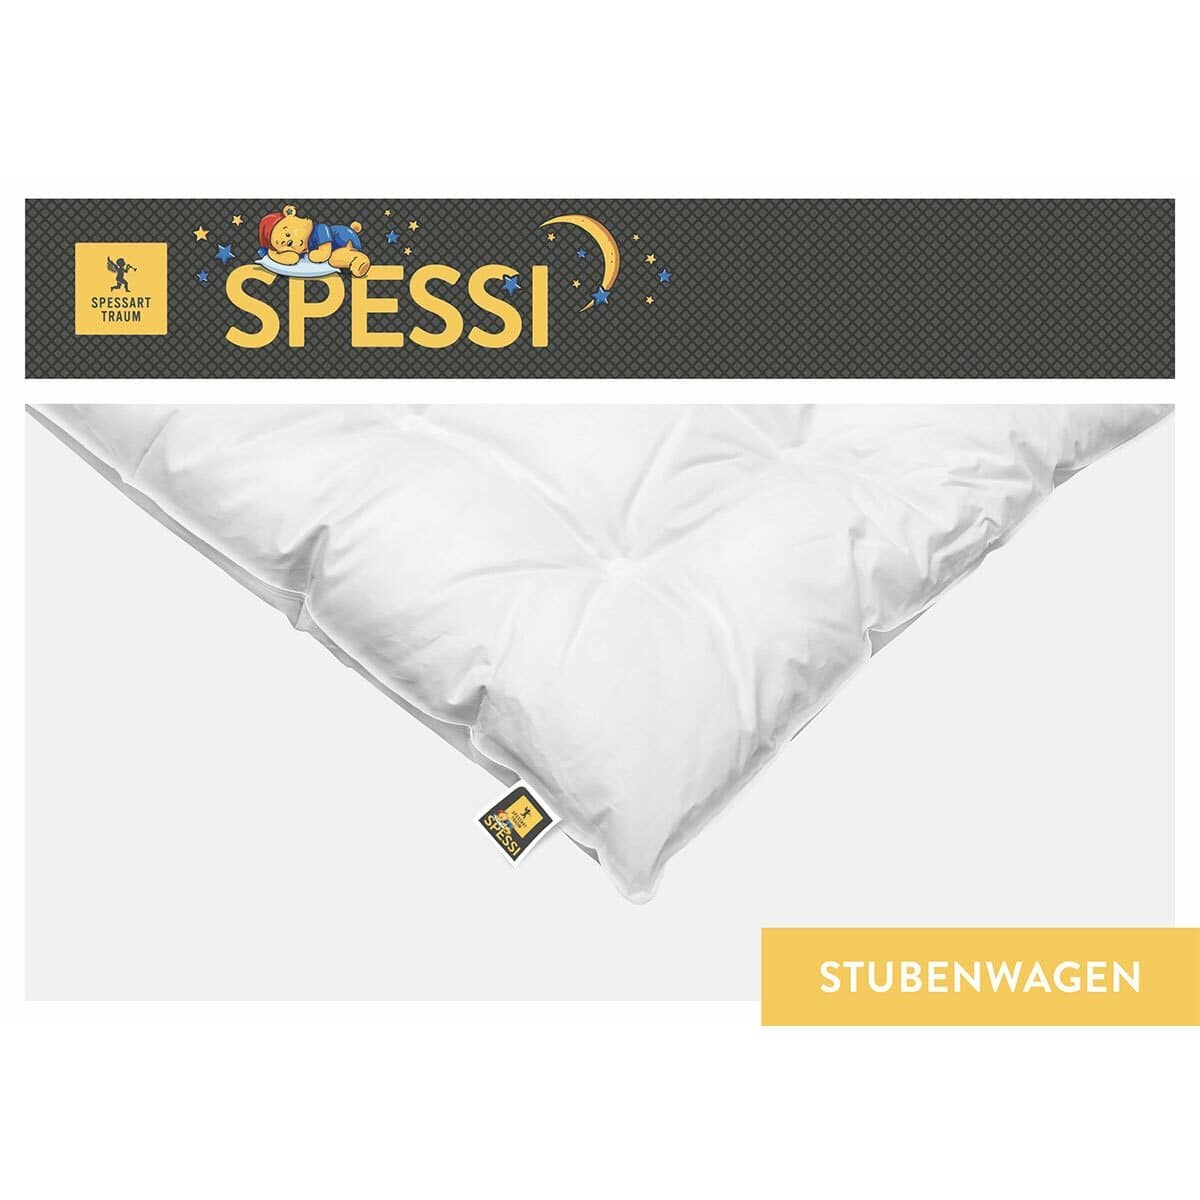 Spessarttraum Daunendecke Spessi Stubenwagen normal, Füllung: 90% Daunen,  10% Federn günstig online kaufen bei Bettwaren Shop